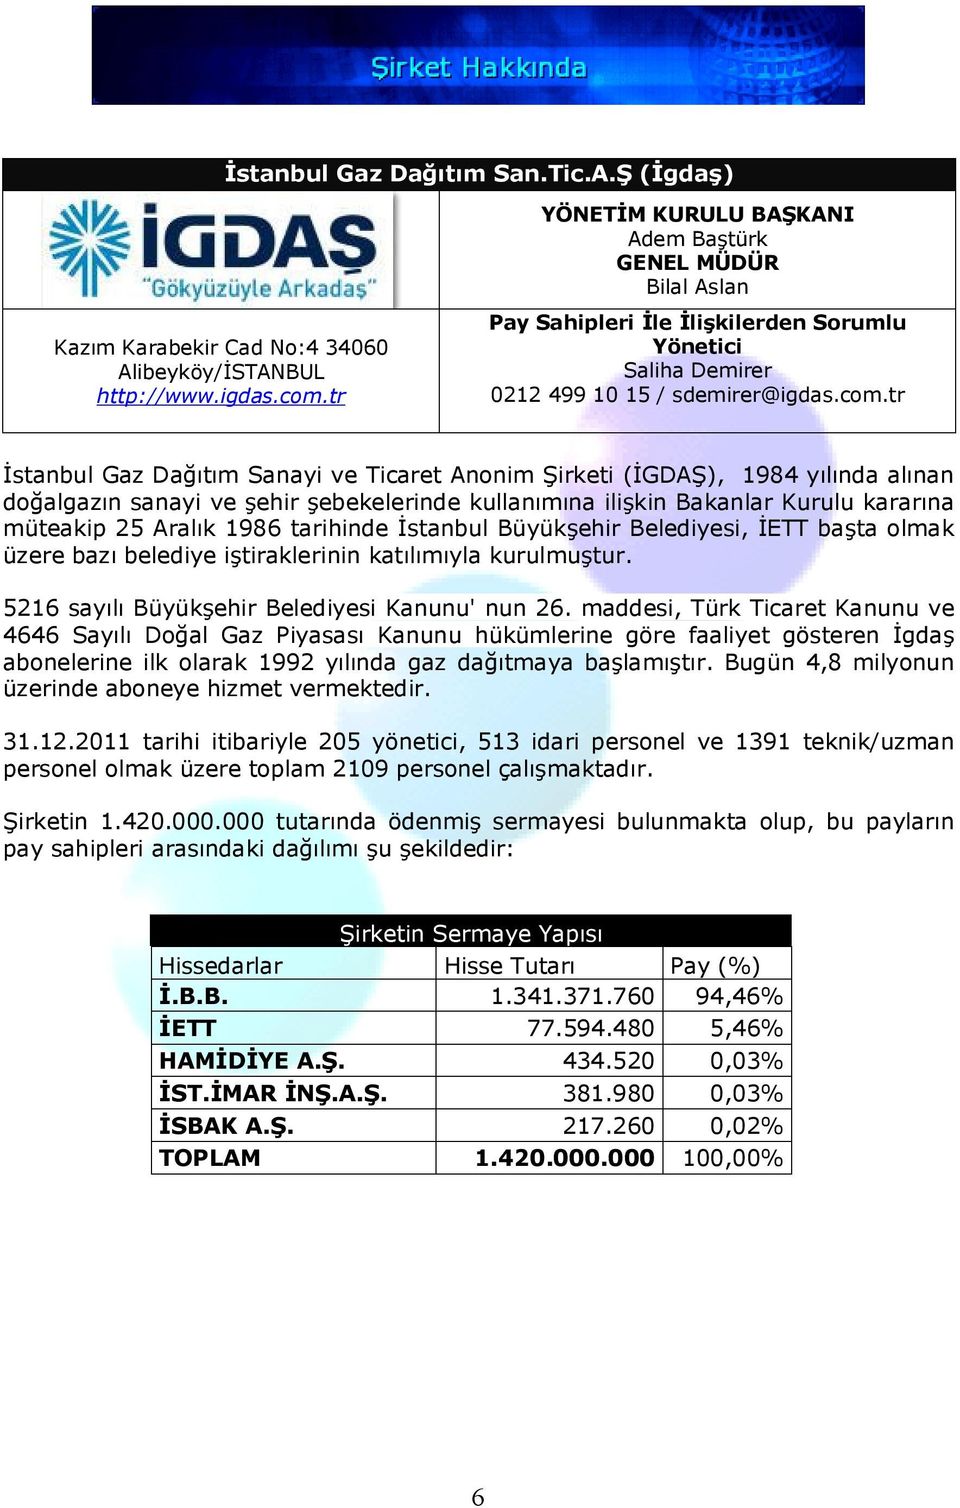 tr İstanbul Gaz Dağıtım Sanayi ve Ticaret Anonim Şirketi (İGDAŞ), 1984 yılında alınan doğalgazın sanayi ve şehir şebekelerinde kullanımına ilişkin Bakanlar Kurulu kararına müteakip 25 Aralık 1986